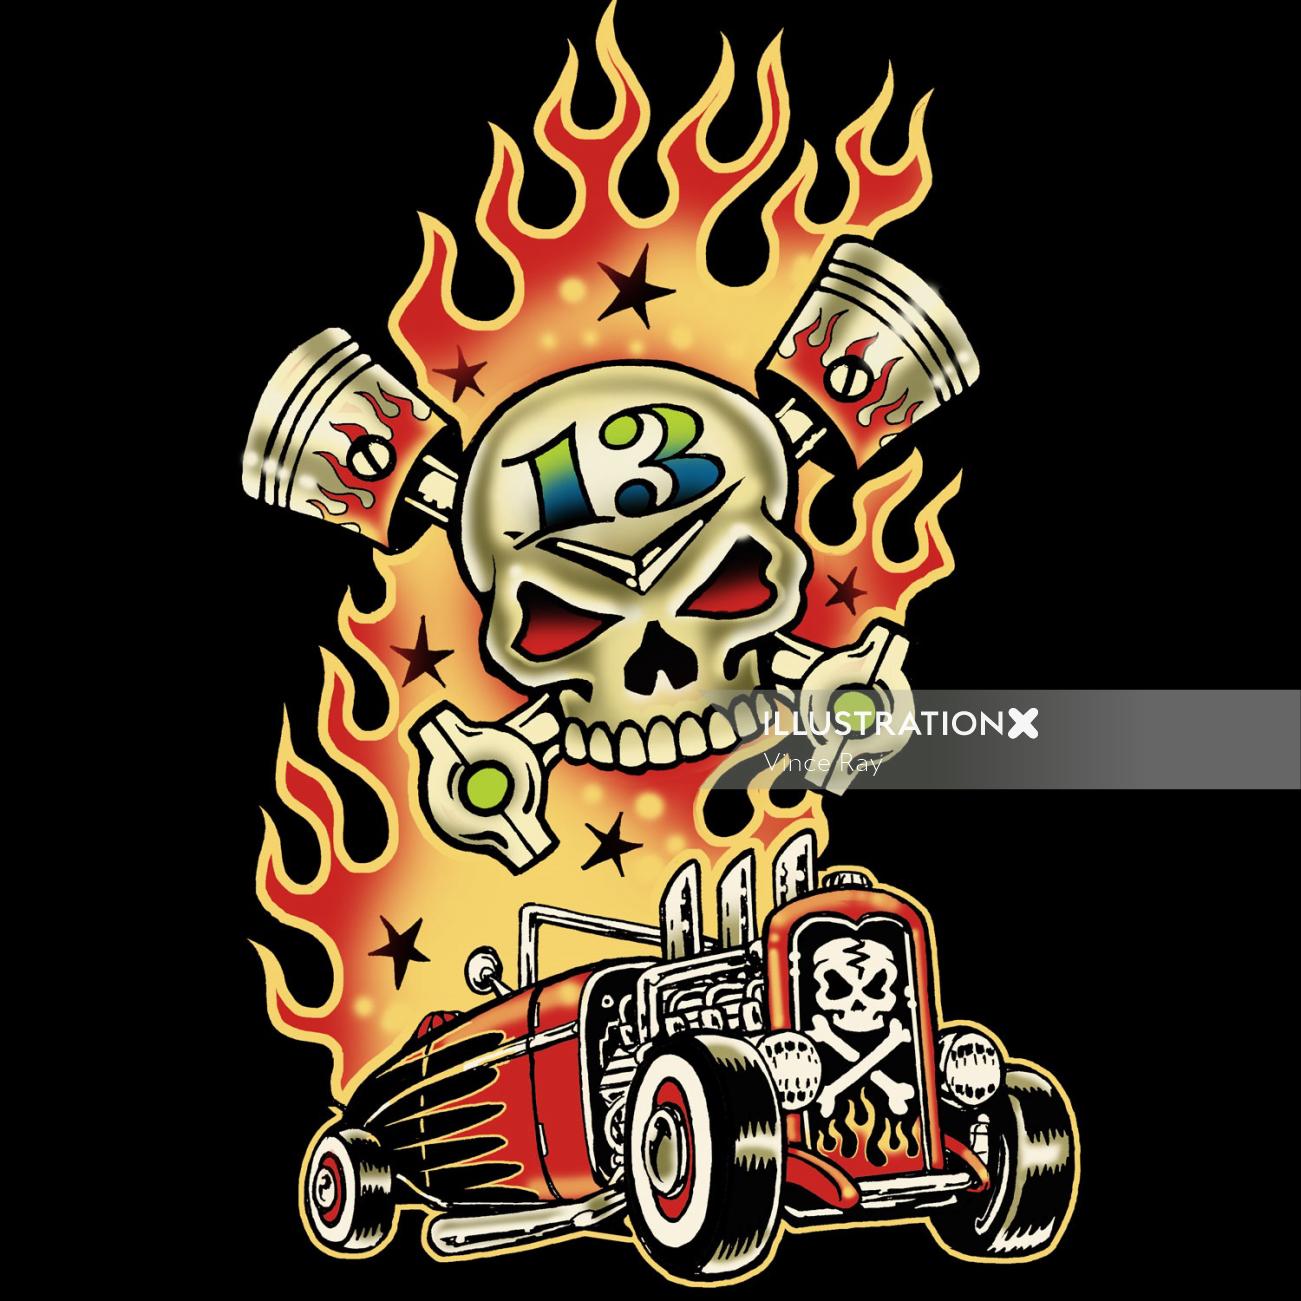 Arte de sobrancelha de um carro em chamas por Vince Ray